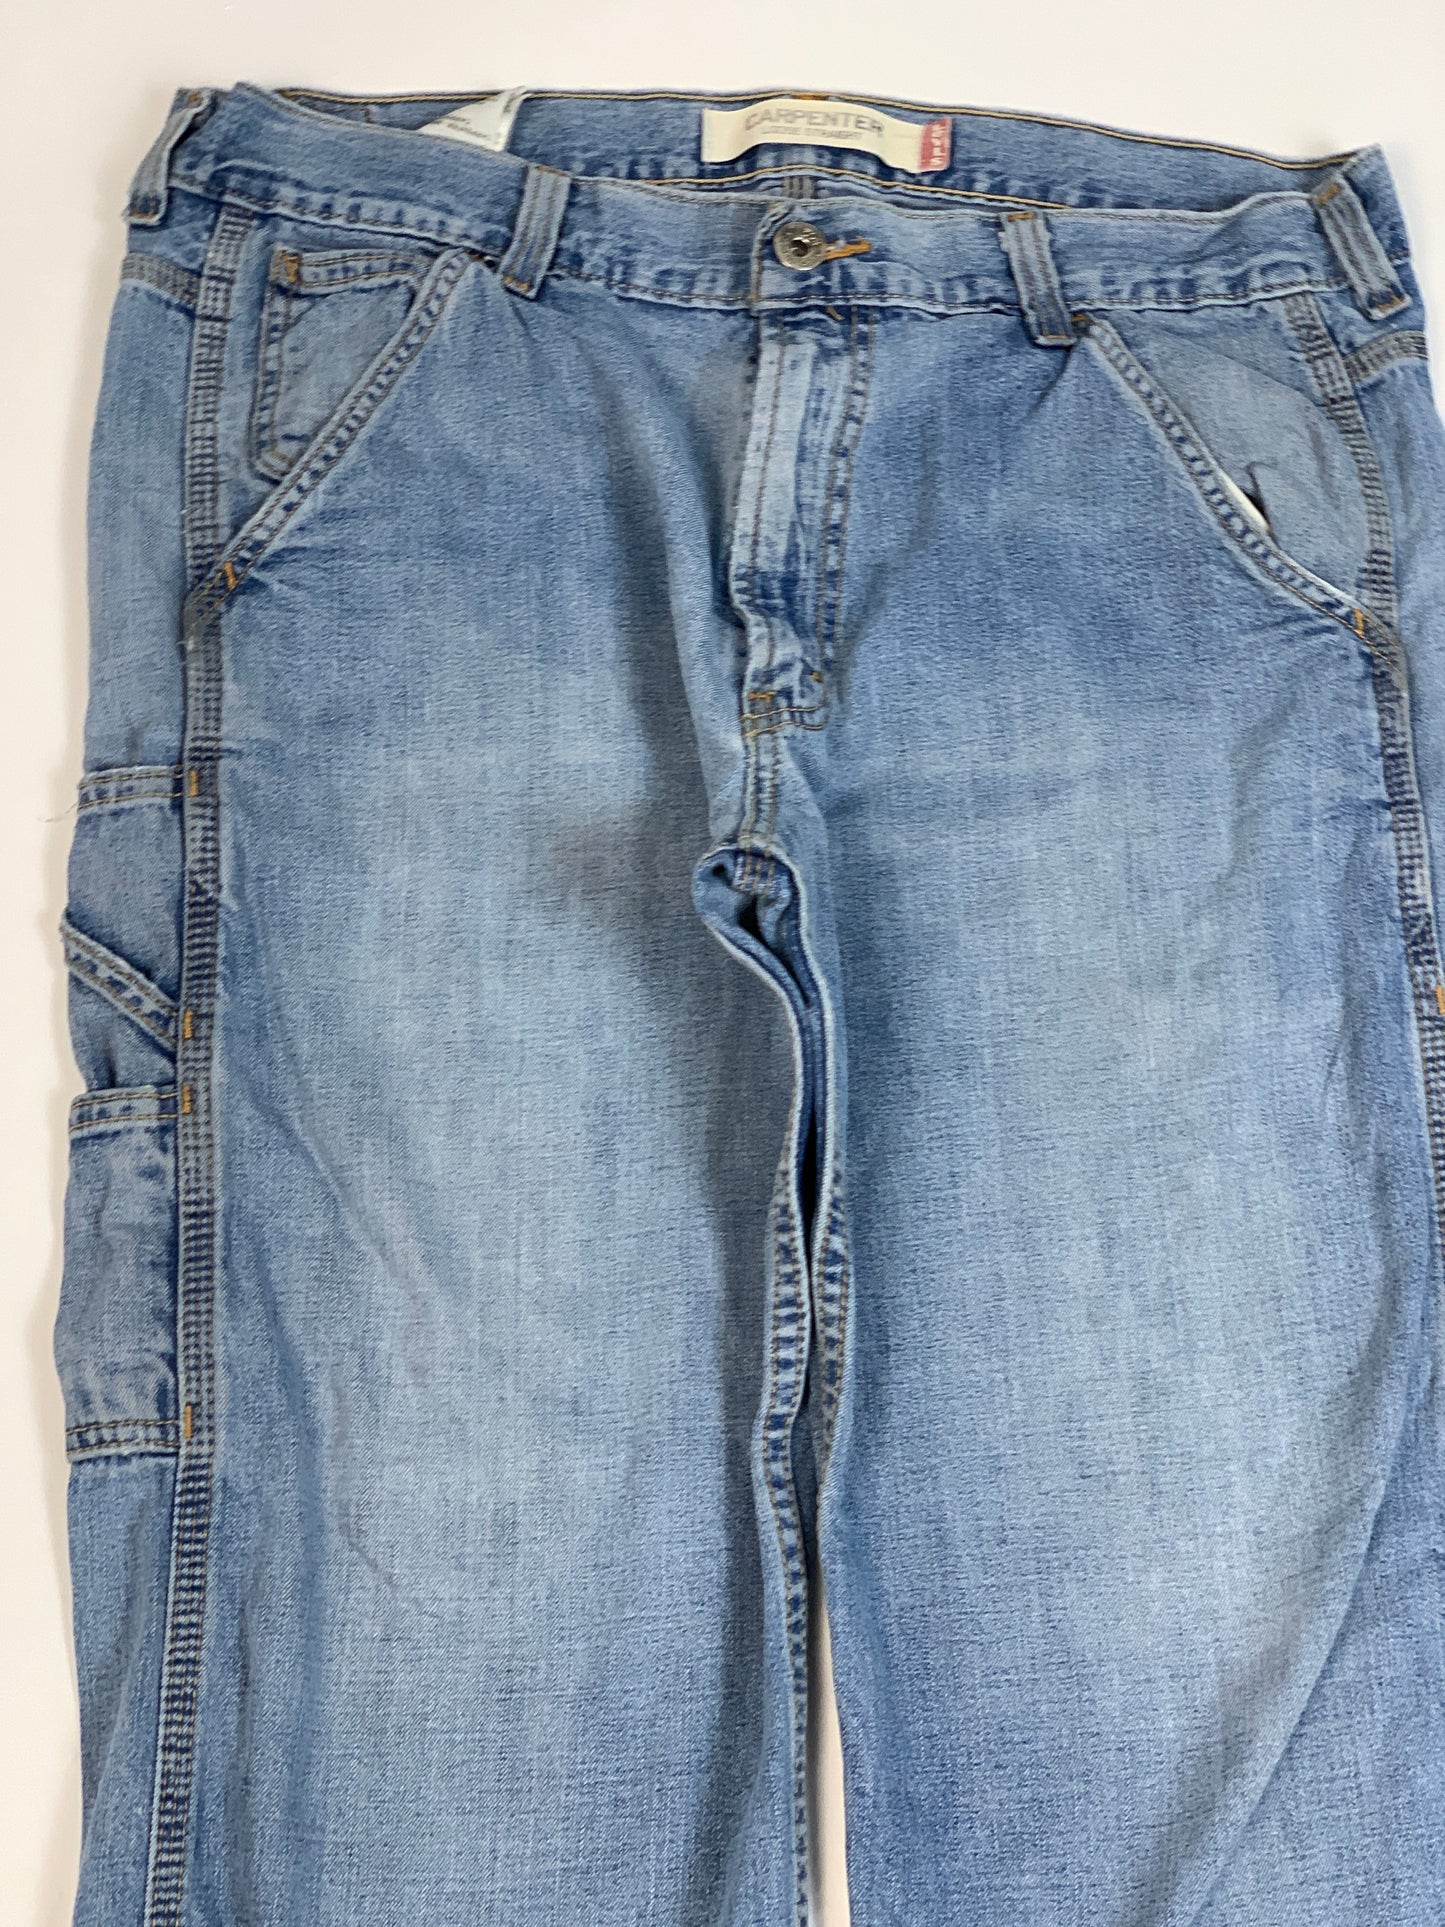 Levis Carpenter Vintage Jeans - 36